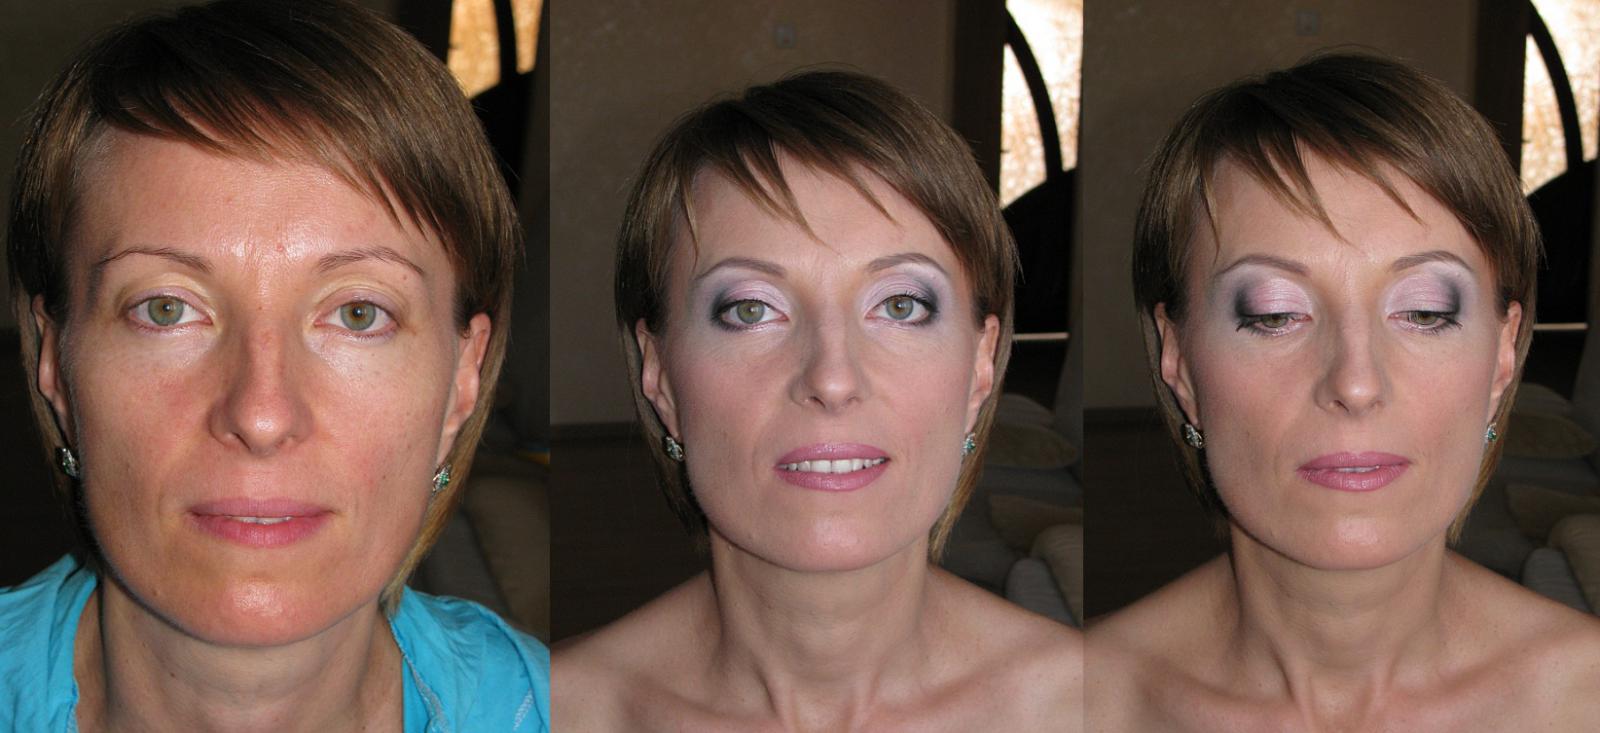 Изменения после 45. Макияж для возрастных женщин. Омолаживающий макияж в 40 лет. Макияж после 45. Макияж за 40 лет для женщин.